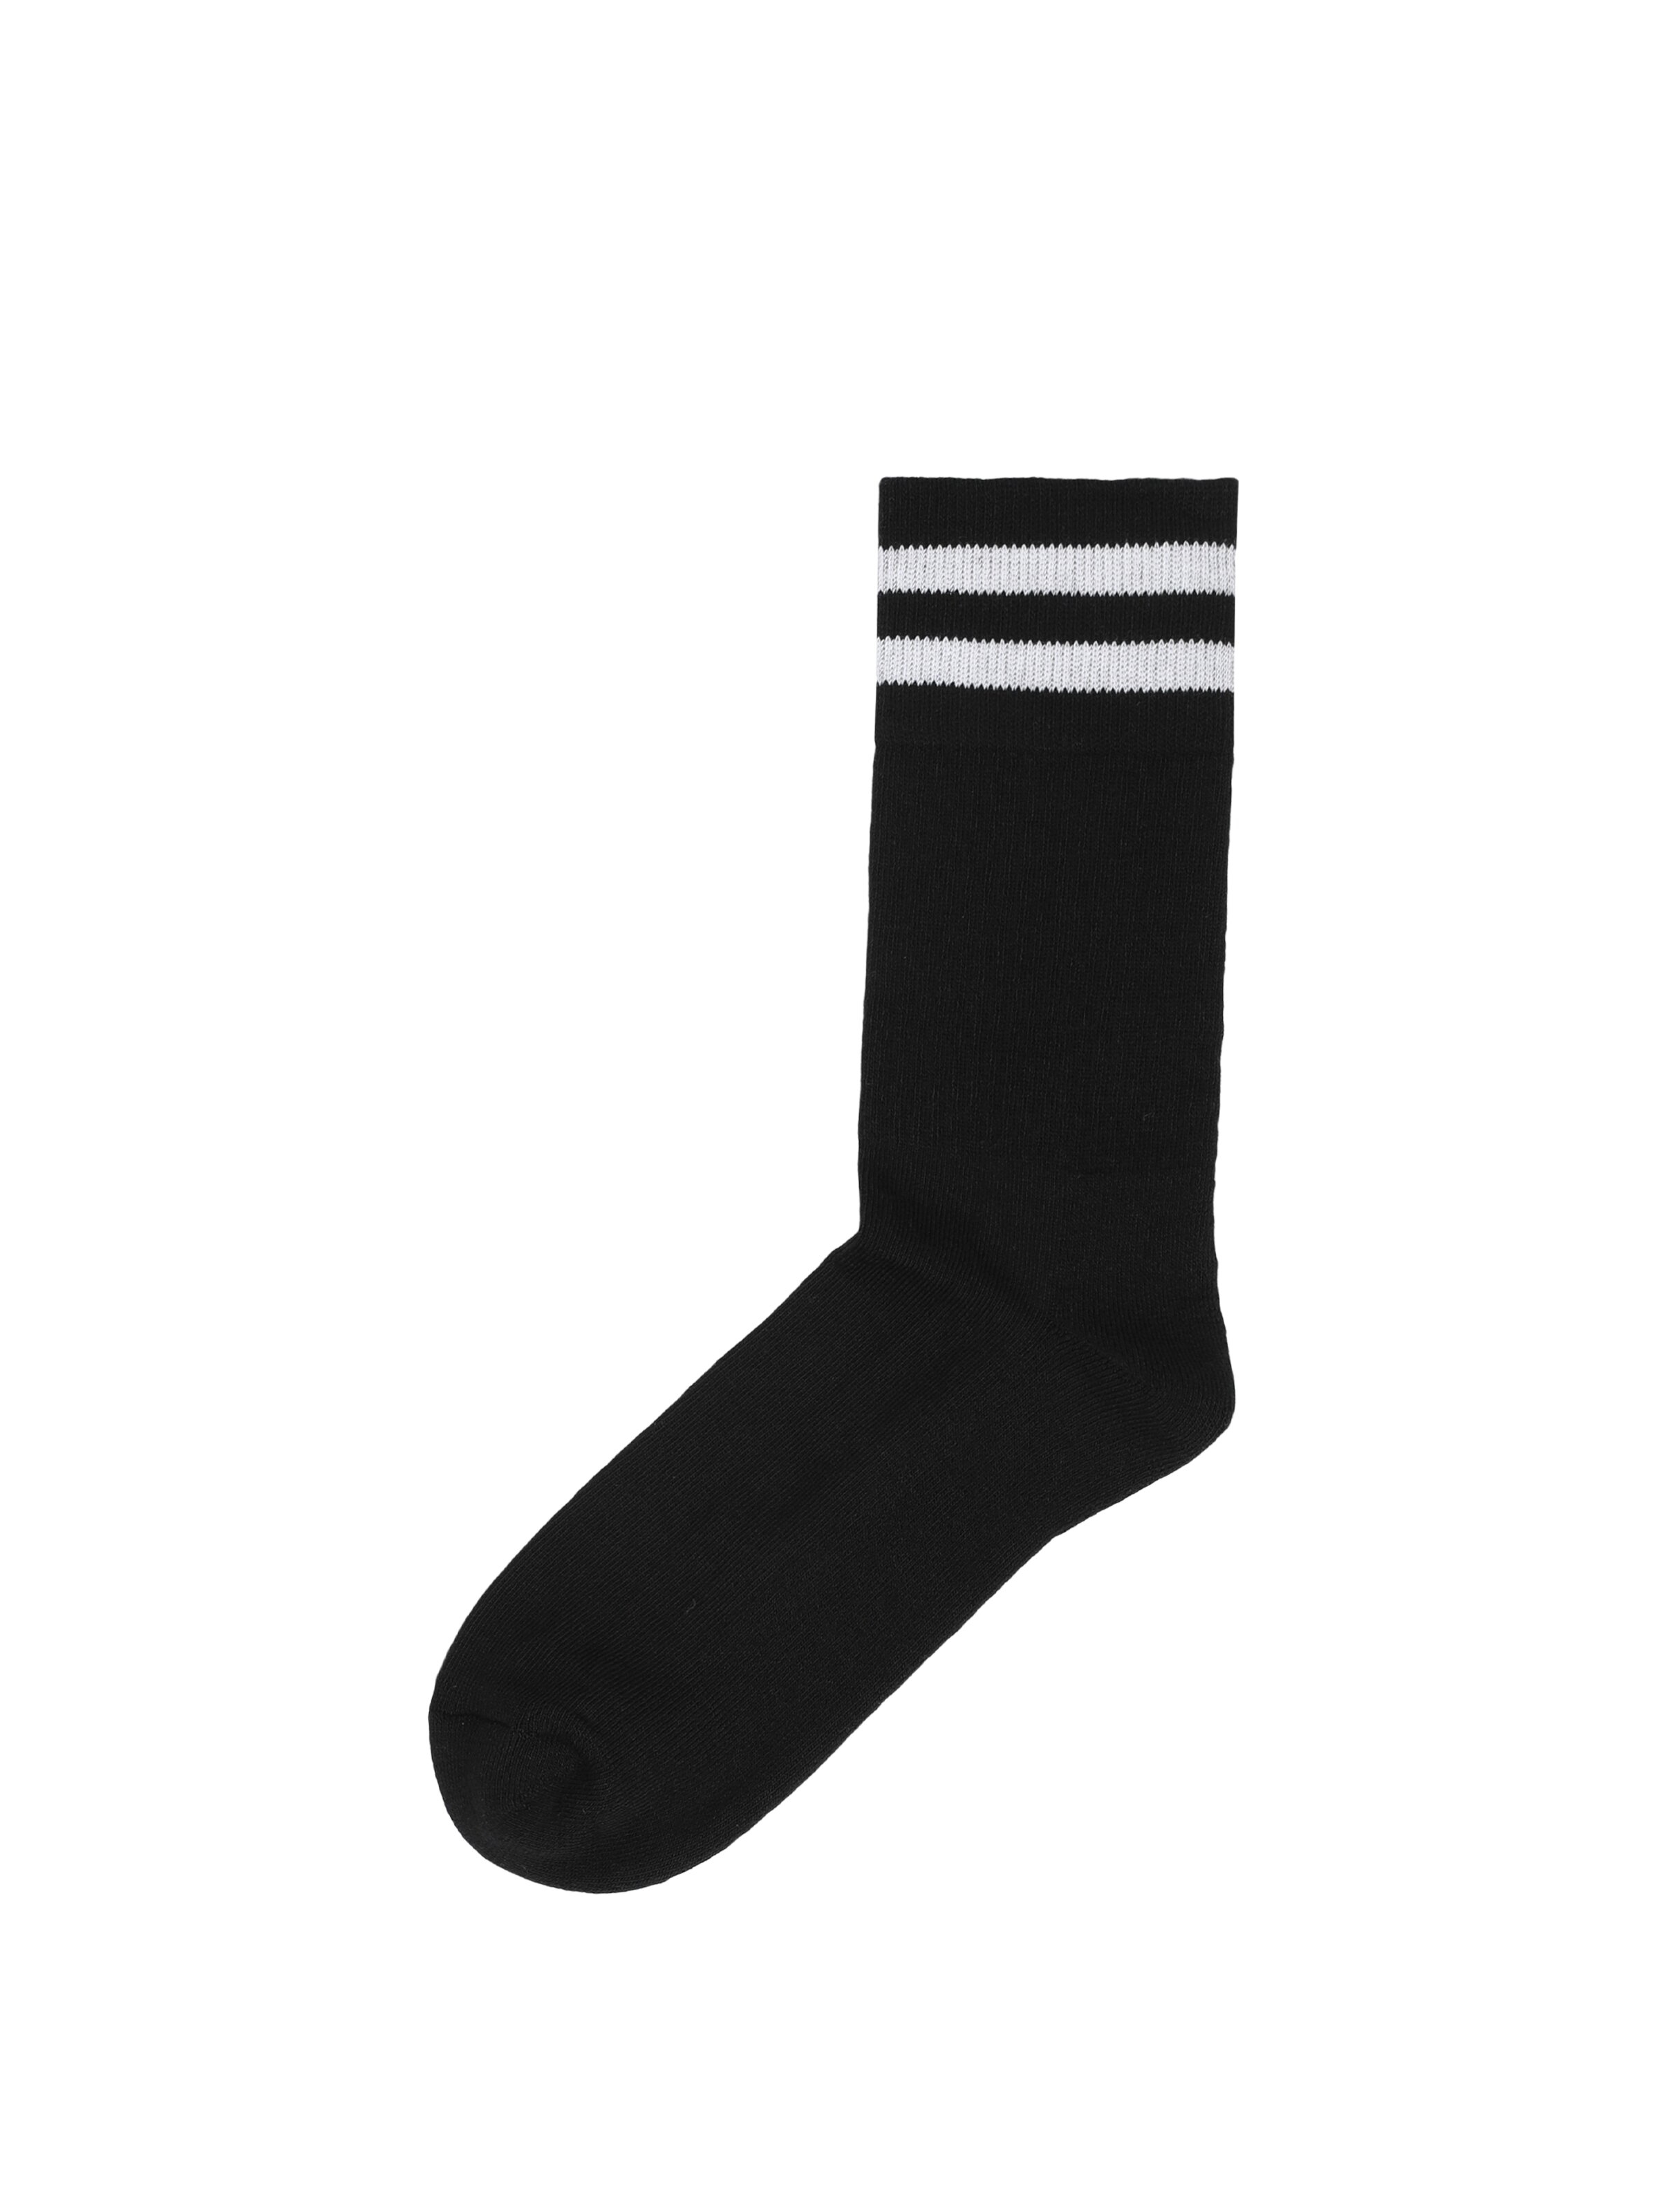 Показати інформацію про  Шкарпетки Чоловічі Чорні  